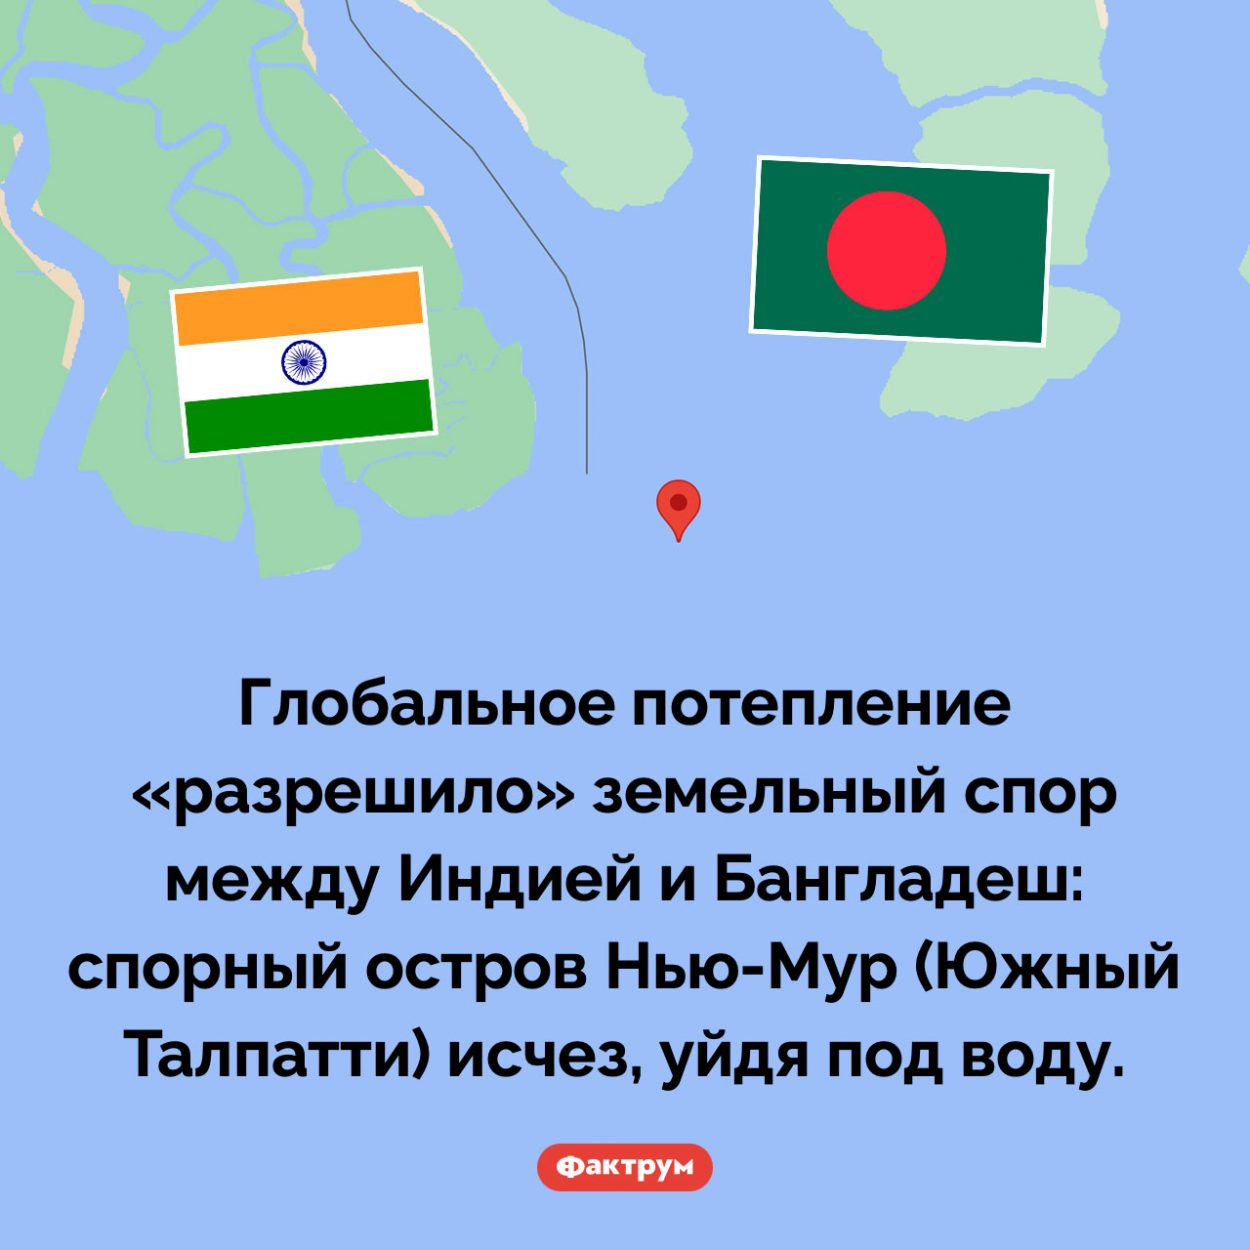 Соломоново решение. Глобальное потепление «разрешило» земельный спор между Индией и Бангладеш: спорный остров Нью-Мур (Южный Талпатти) исчез, уйдя под воду.